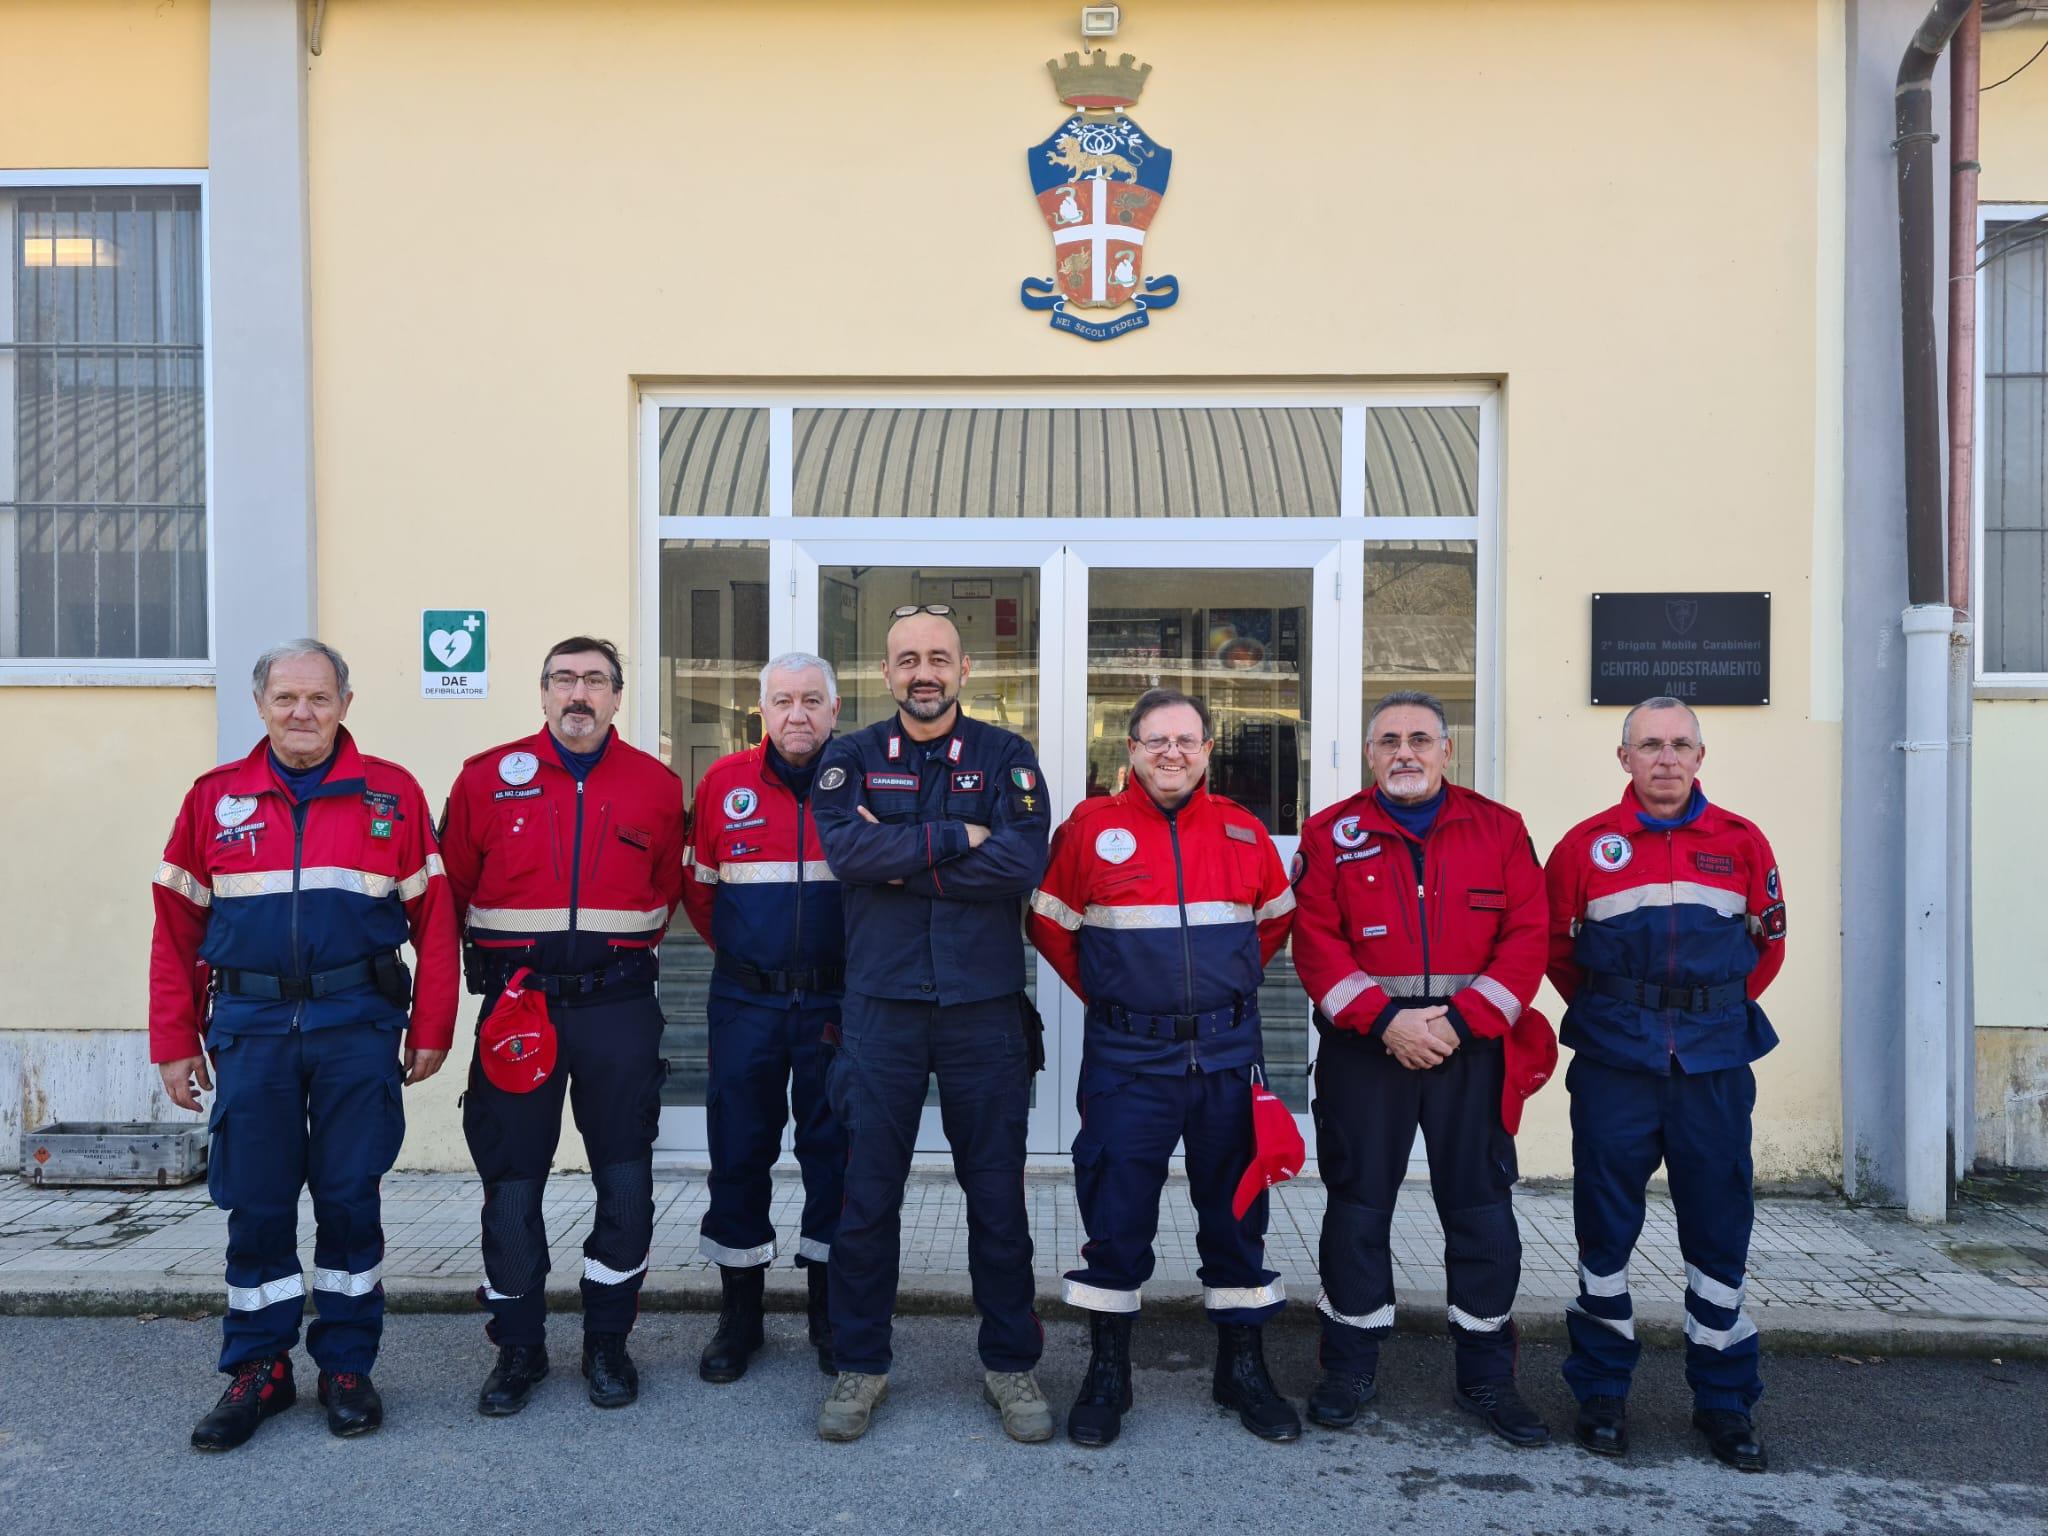 Associazione carabinieri Saronno alla caserma interforze: possibile collaborazione